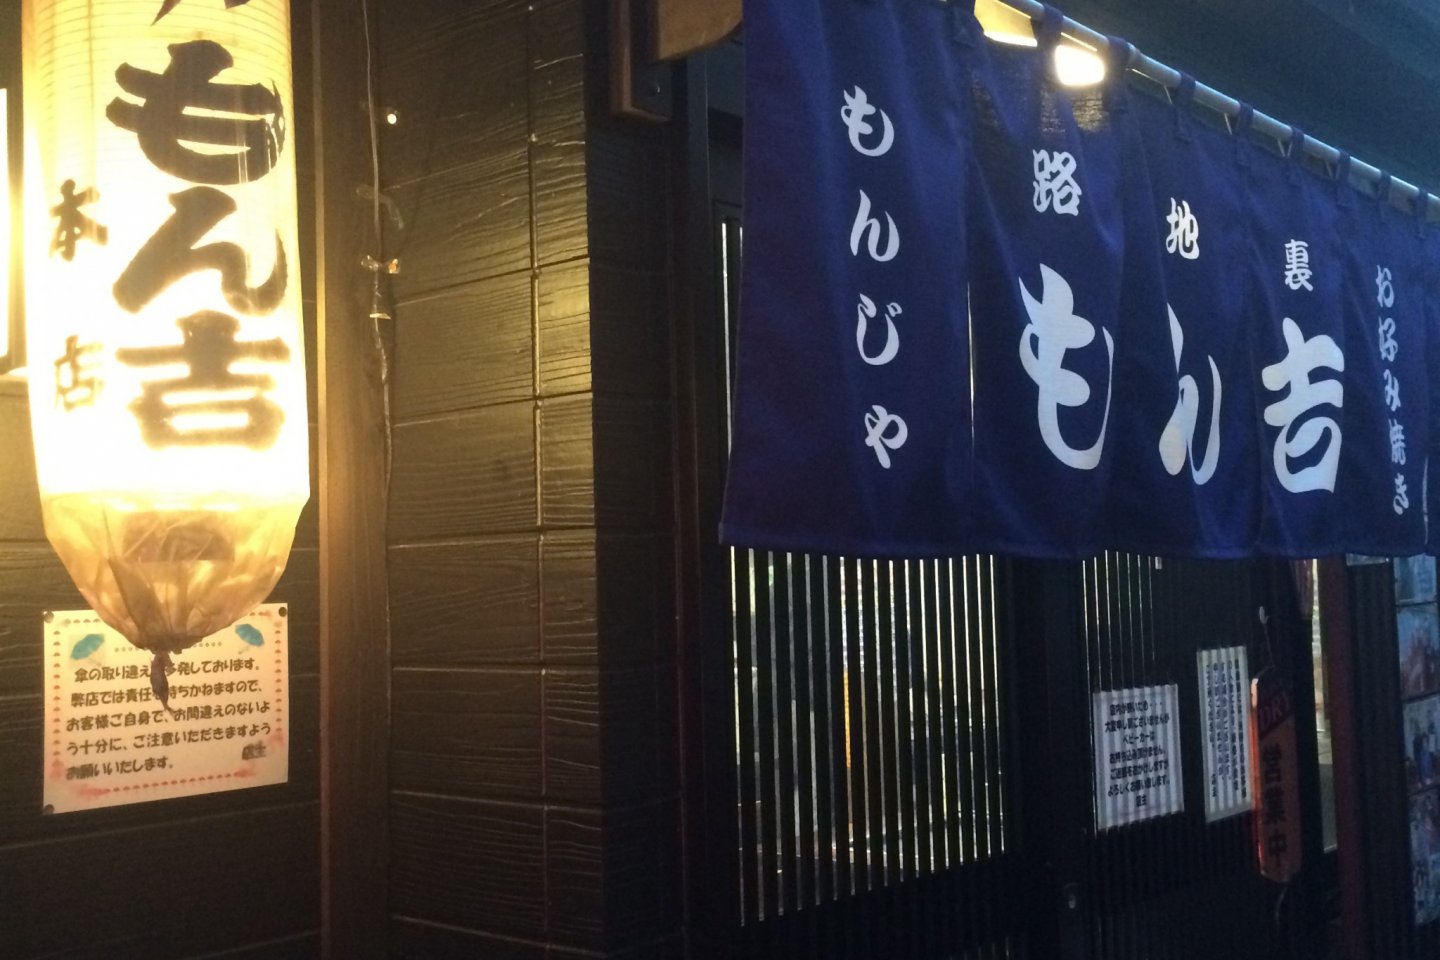 ร้านมอนคิชิ (Monkichi) คือร้านมอนจะที่มีชื่อเสียงในซึตคิชิมะ